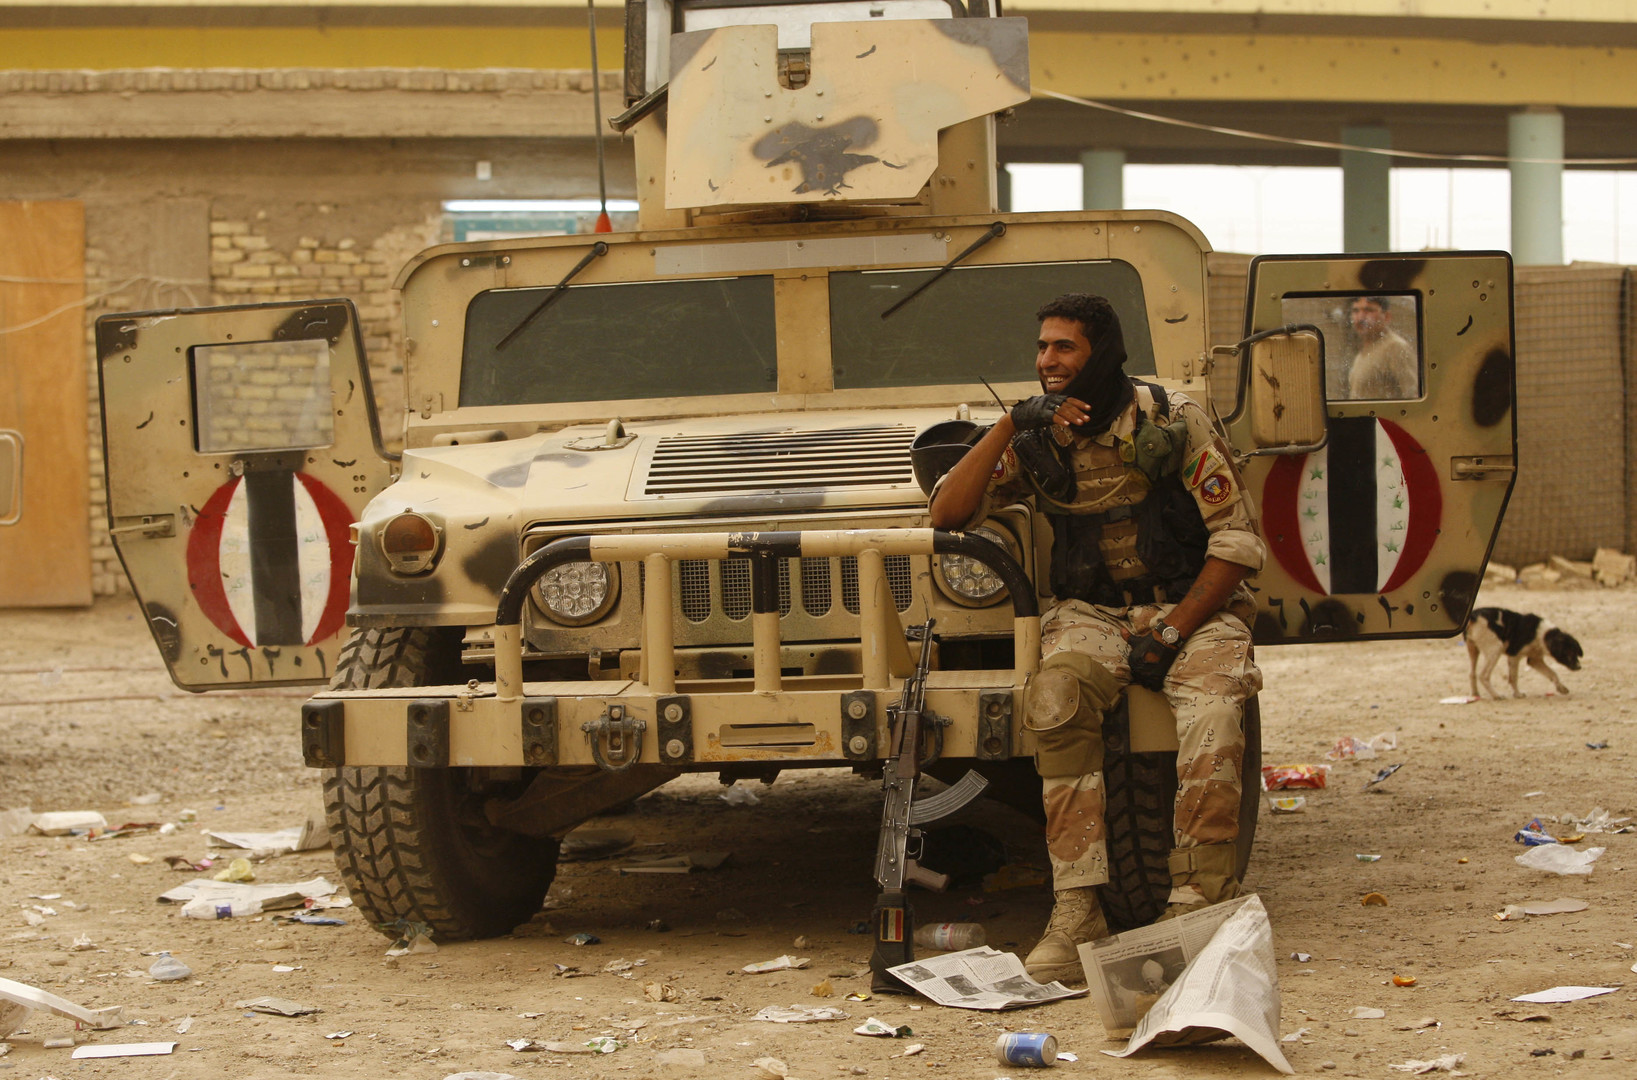 Le guide complet de l'arsenal de Daesh